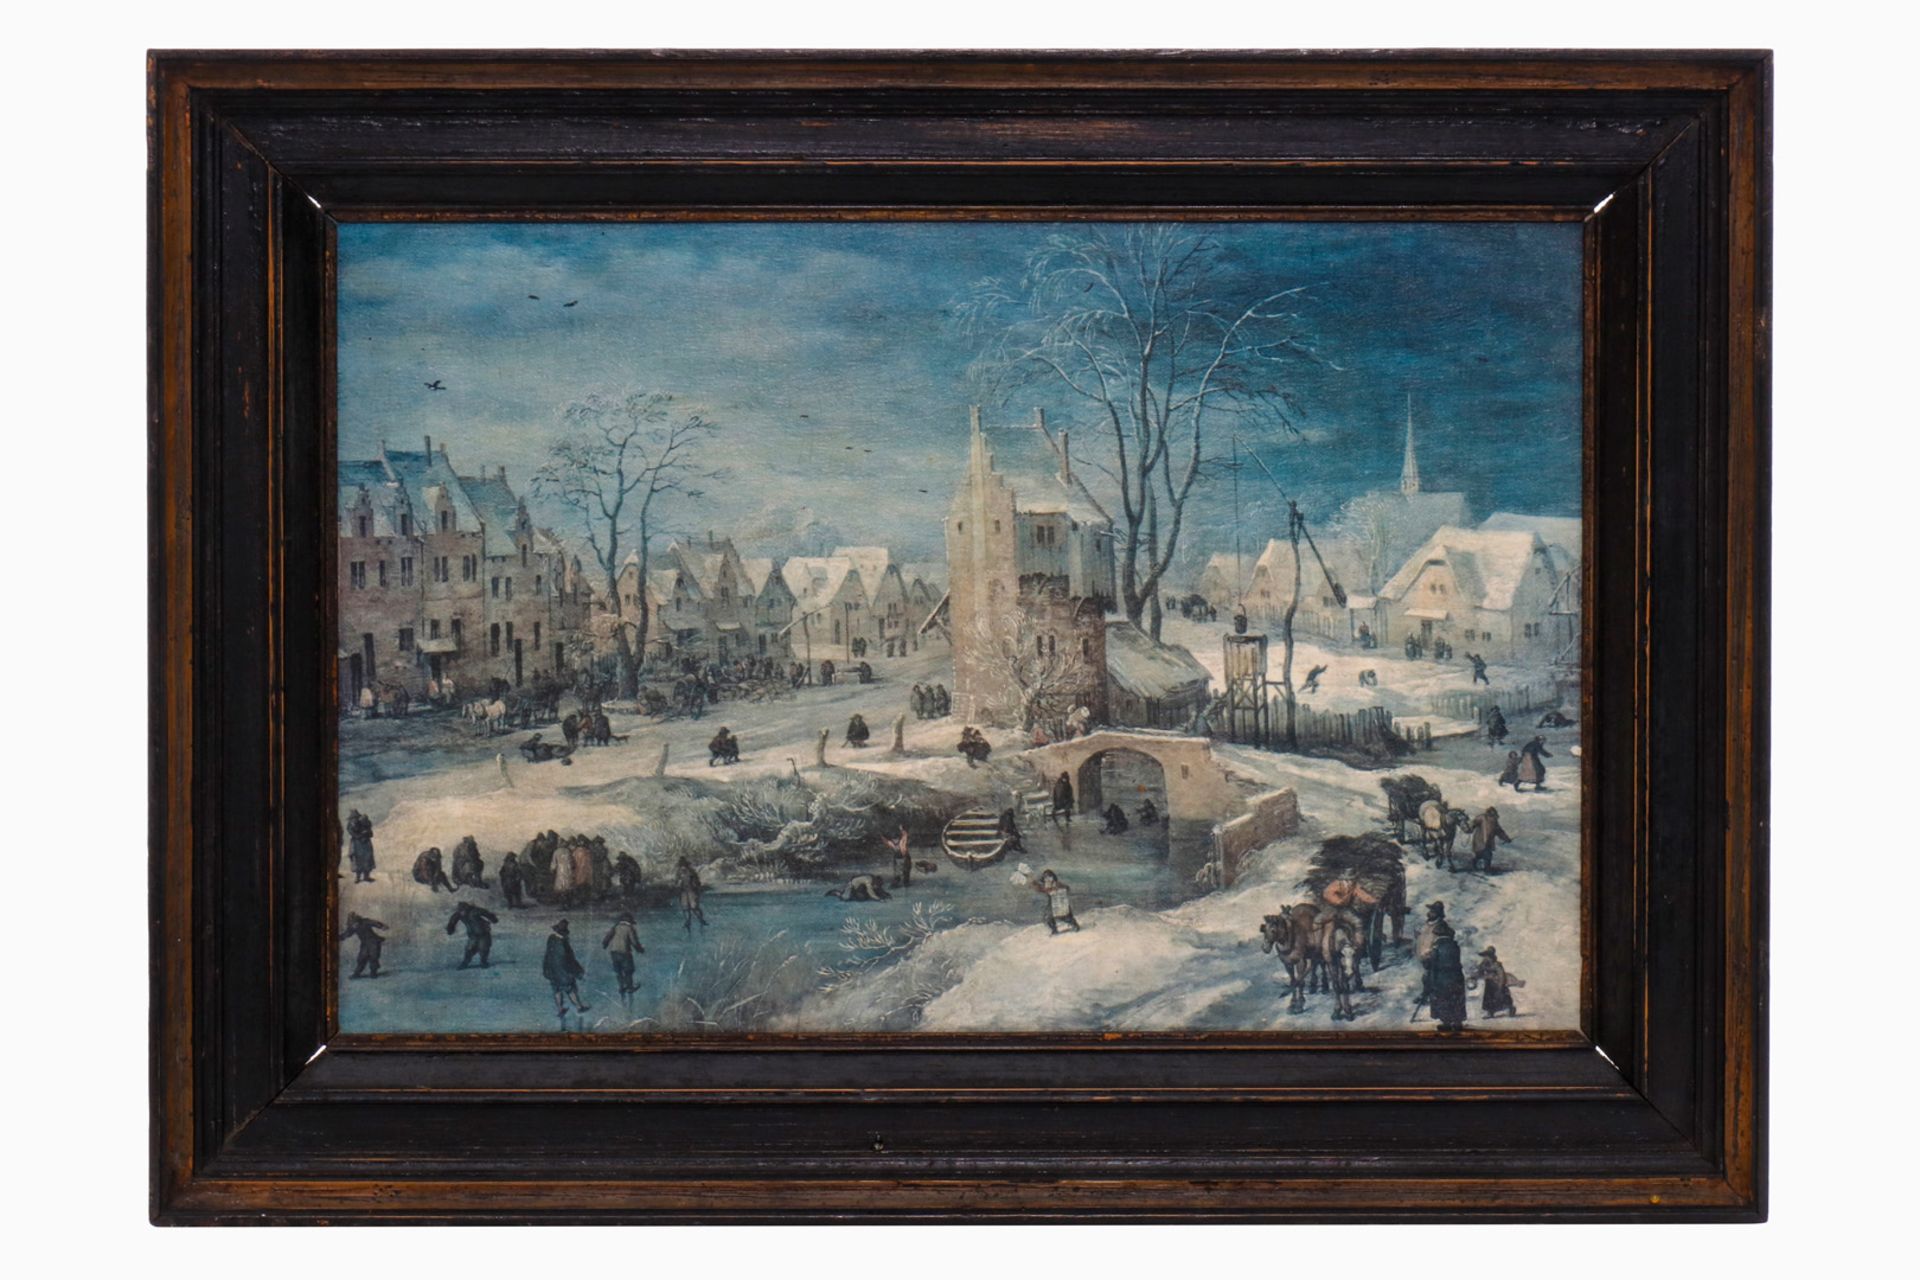 Gedrucktes Bild eines alten Meisters ”Demonder”, winterliches Dorf, auf Leinwand gedruckt, in Manier